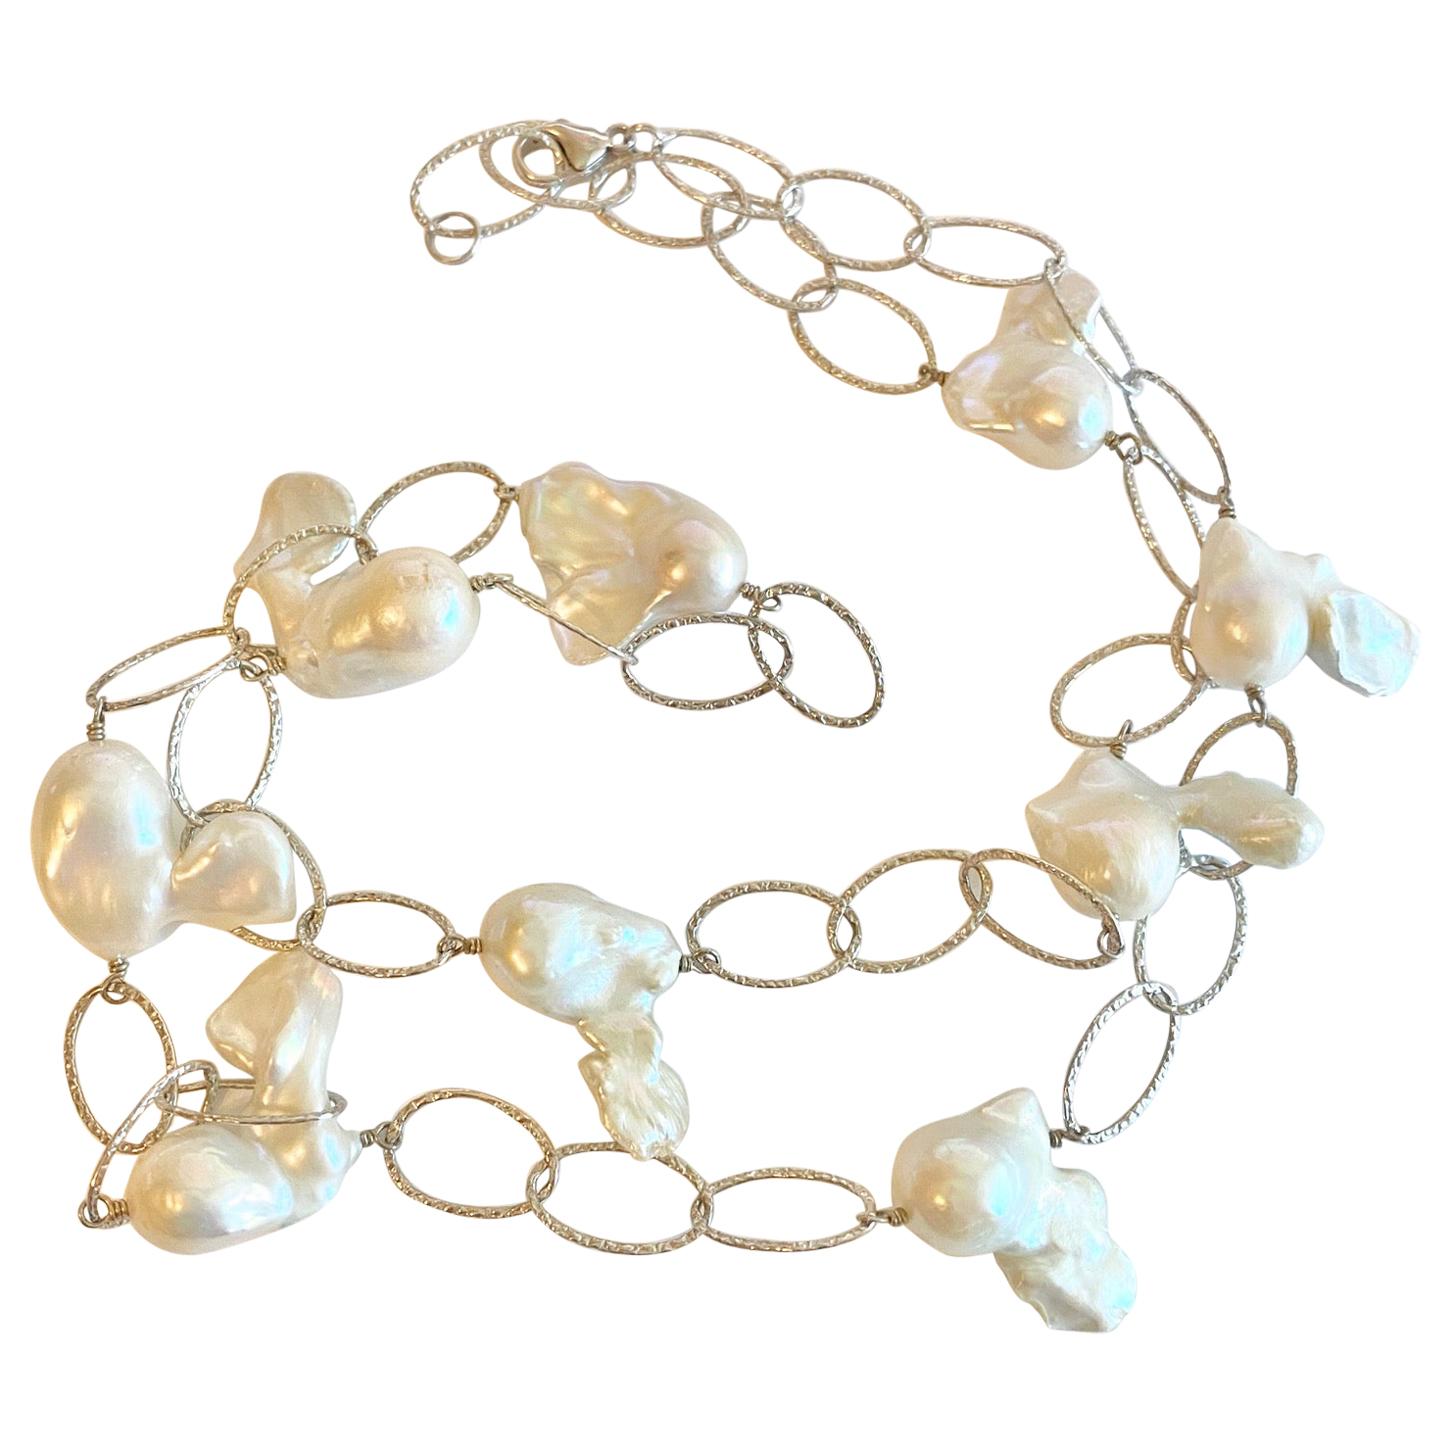 Halskette aus echten Barockperlen und Sterling-Gliedern, Perlen mit Drahtumwicklung